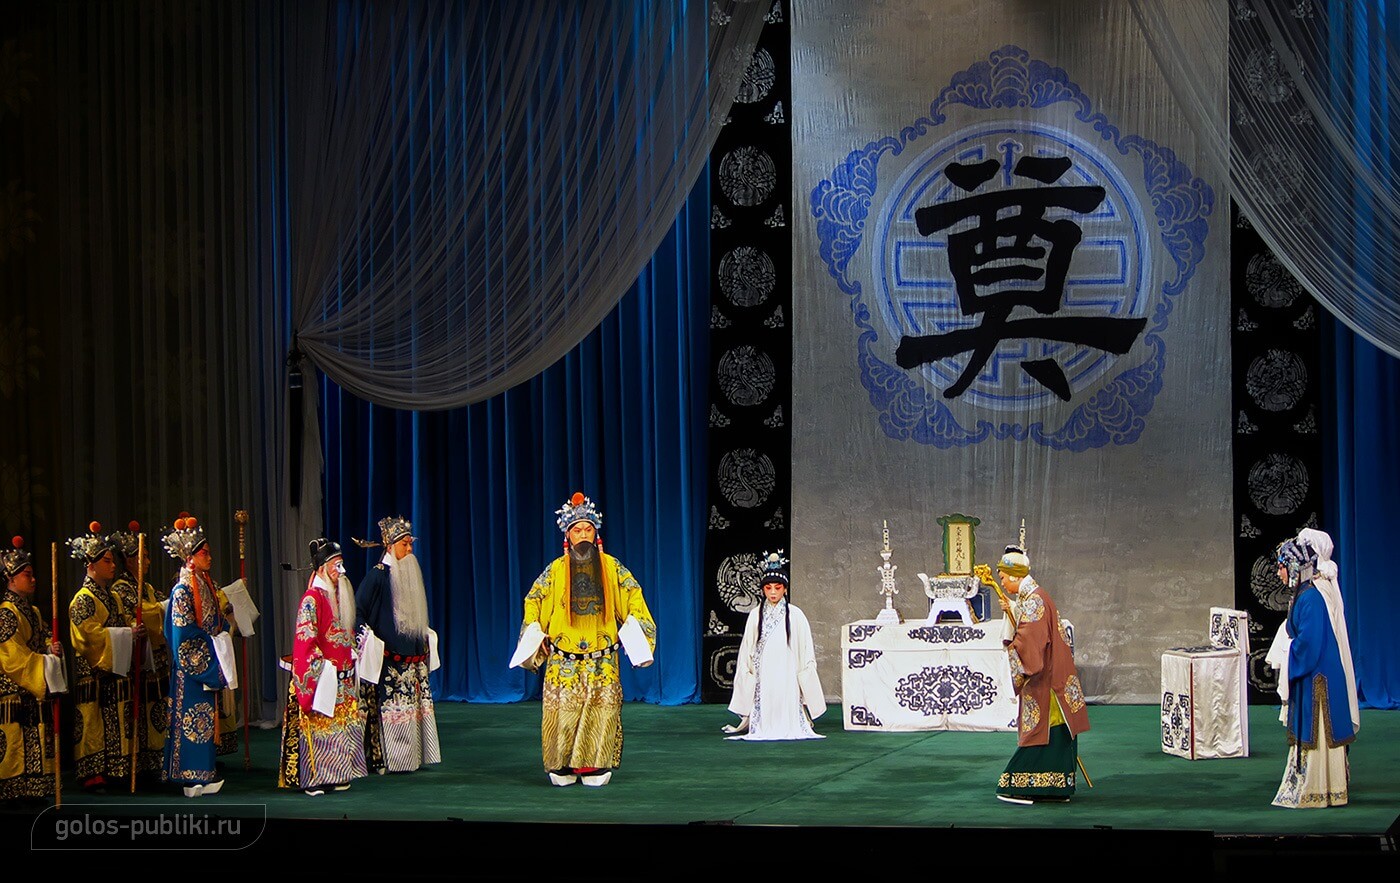 Семья Ян встречается с императором. Преобладание насыщенного желтого цвета в гриме и костюме императора - символ хитрости и коварства